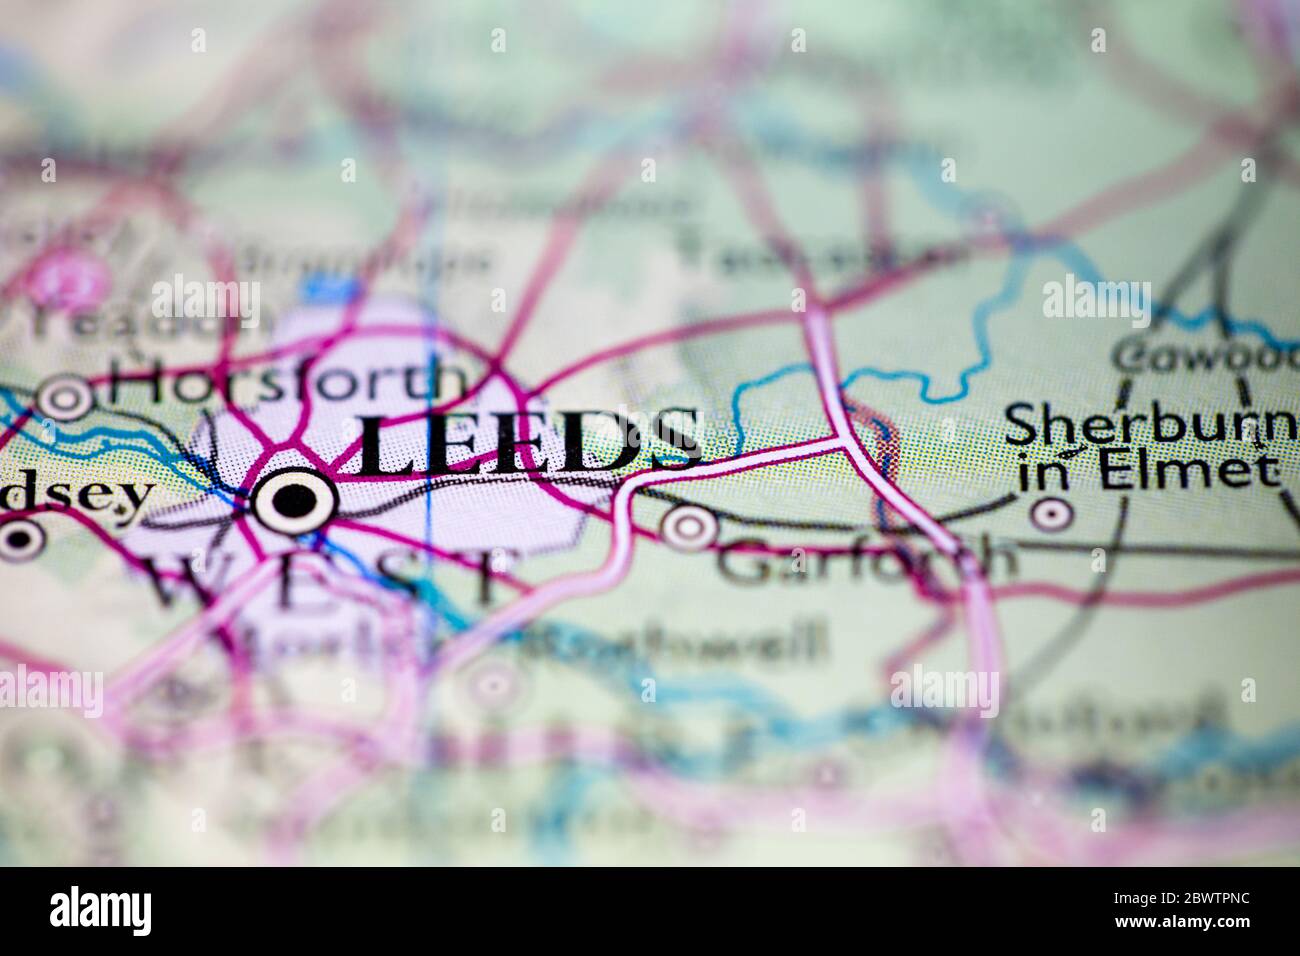 Profundidad de campo reducida se centra en la ubicación del mapa geográfico de leeds City Inglaterra Reino Unido Gran Bretaña Europa continente encendido atlas Foto de stock